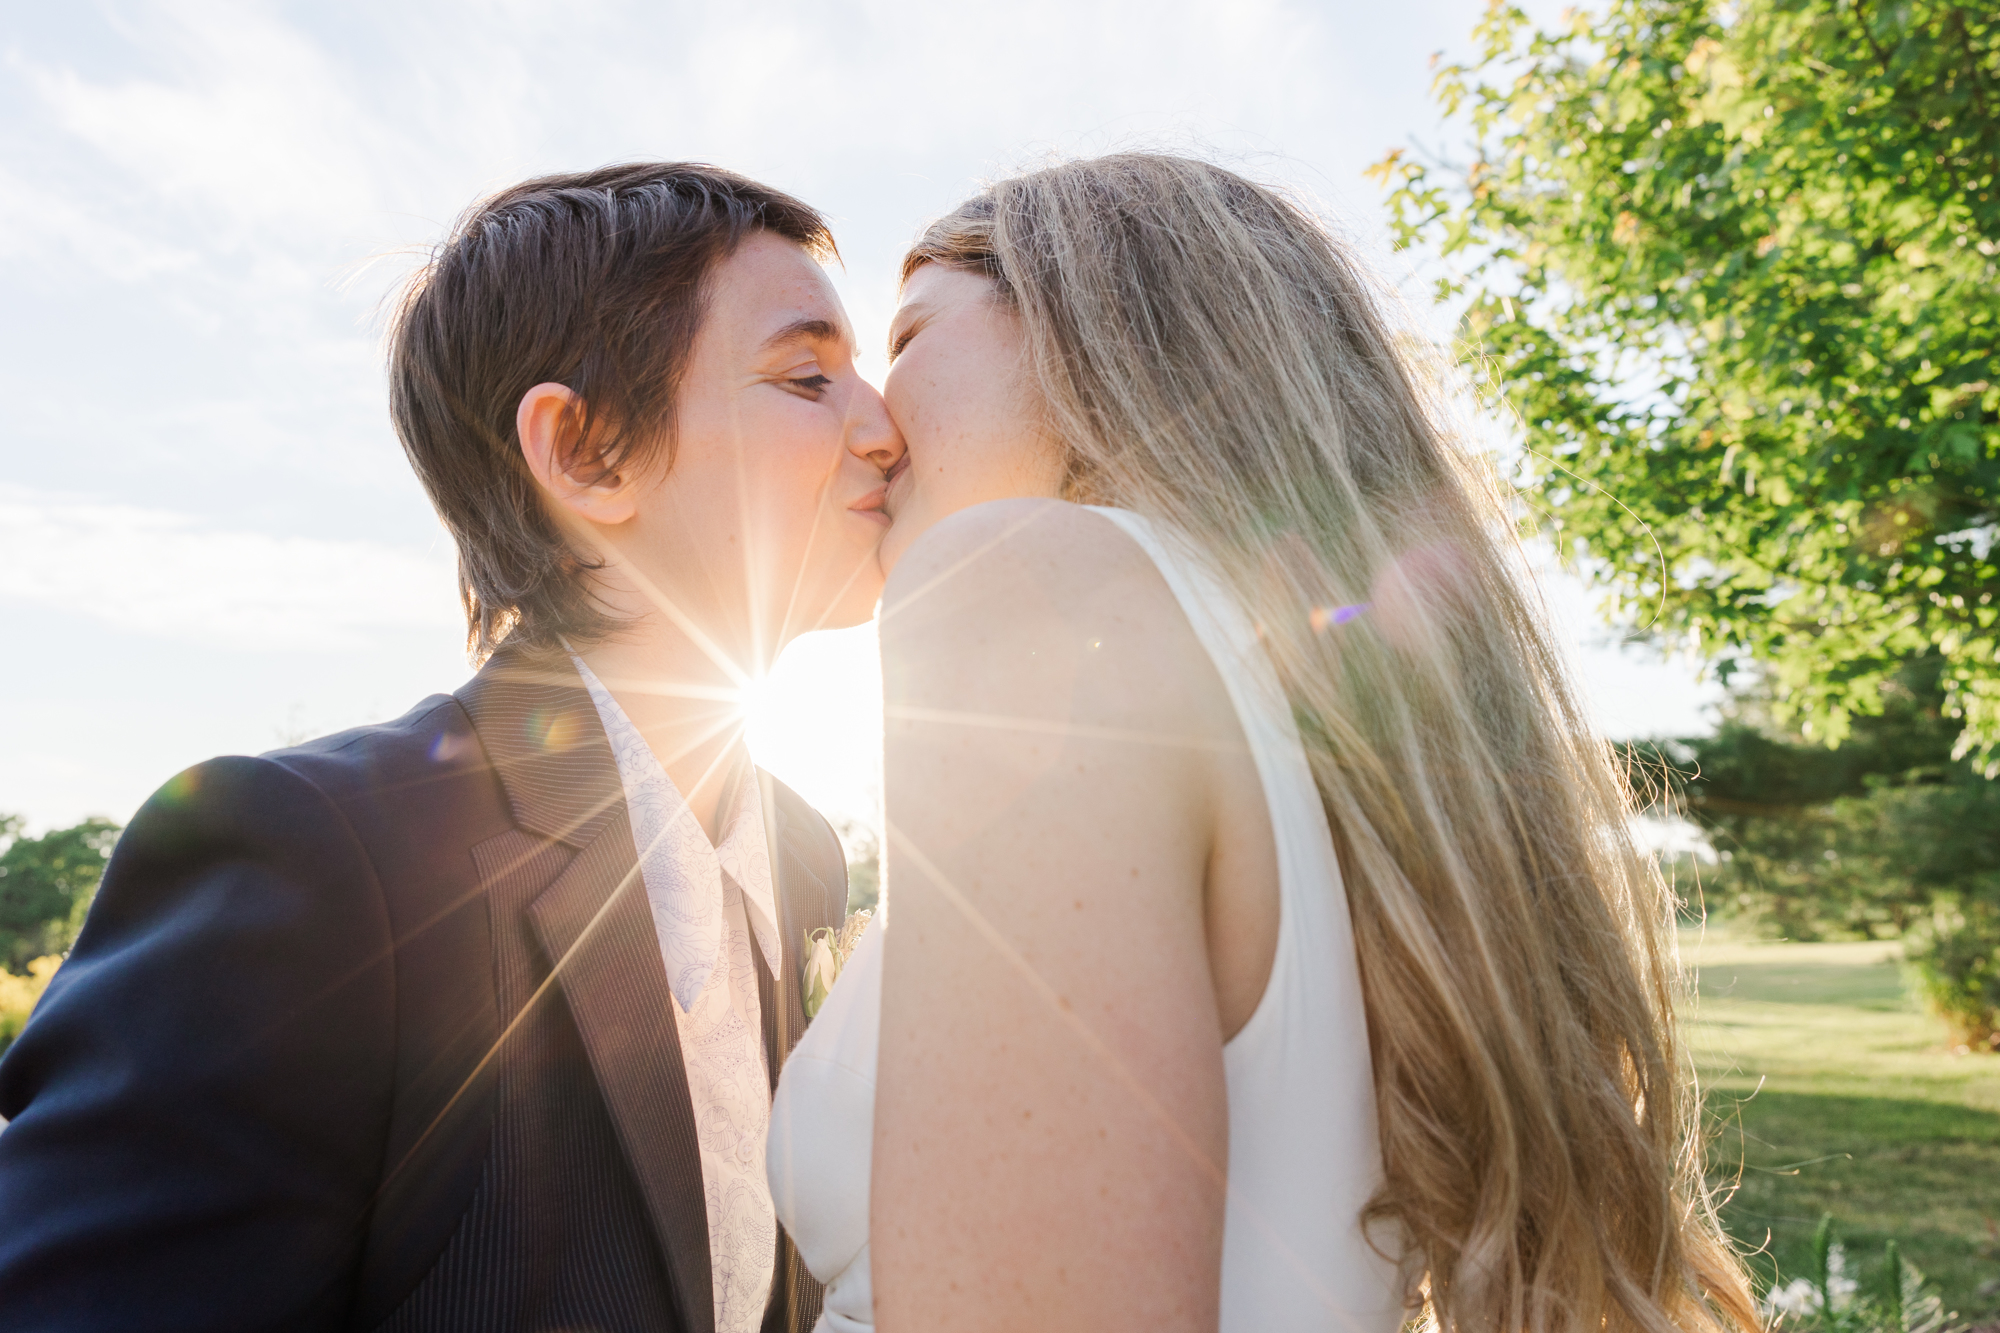 Breath - Taking Wedding at Maple Meadows Farm, Canada